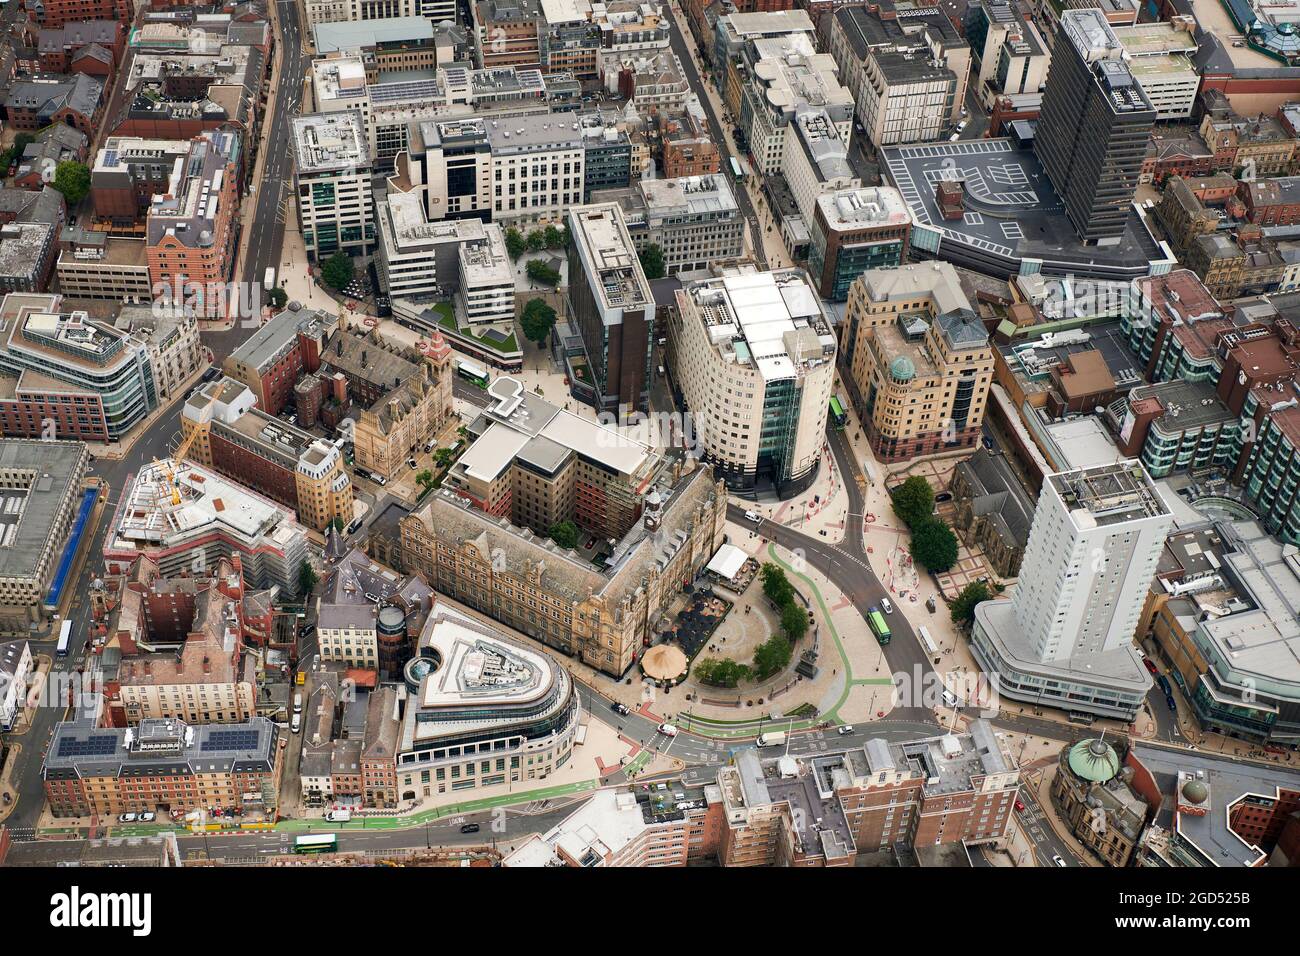 Una vista aérea de la plaza de la ciudad, con la nueva sede del canal 4, el distrito de negocios del centro de la ciudad de Leeds, West Yorkshire, norte de Inglaterra, Reino Unido Foto de stock